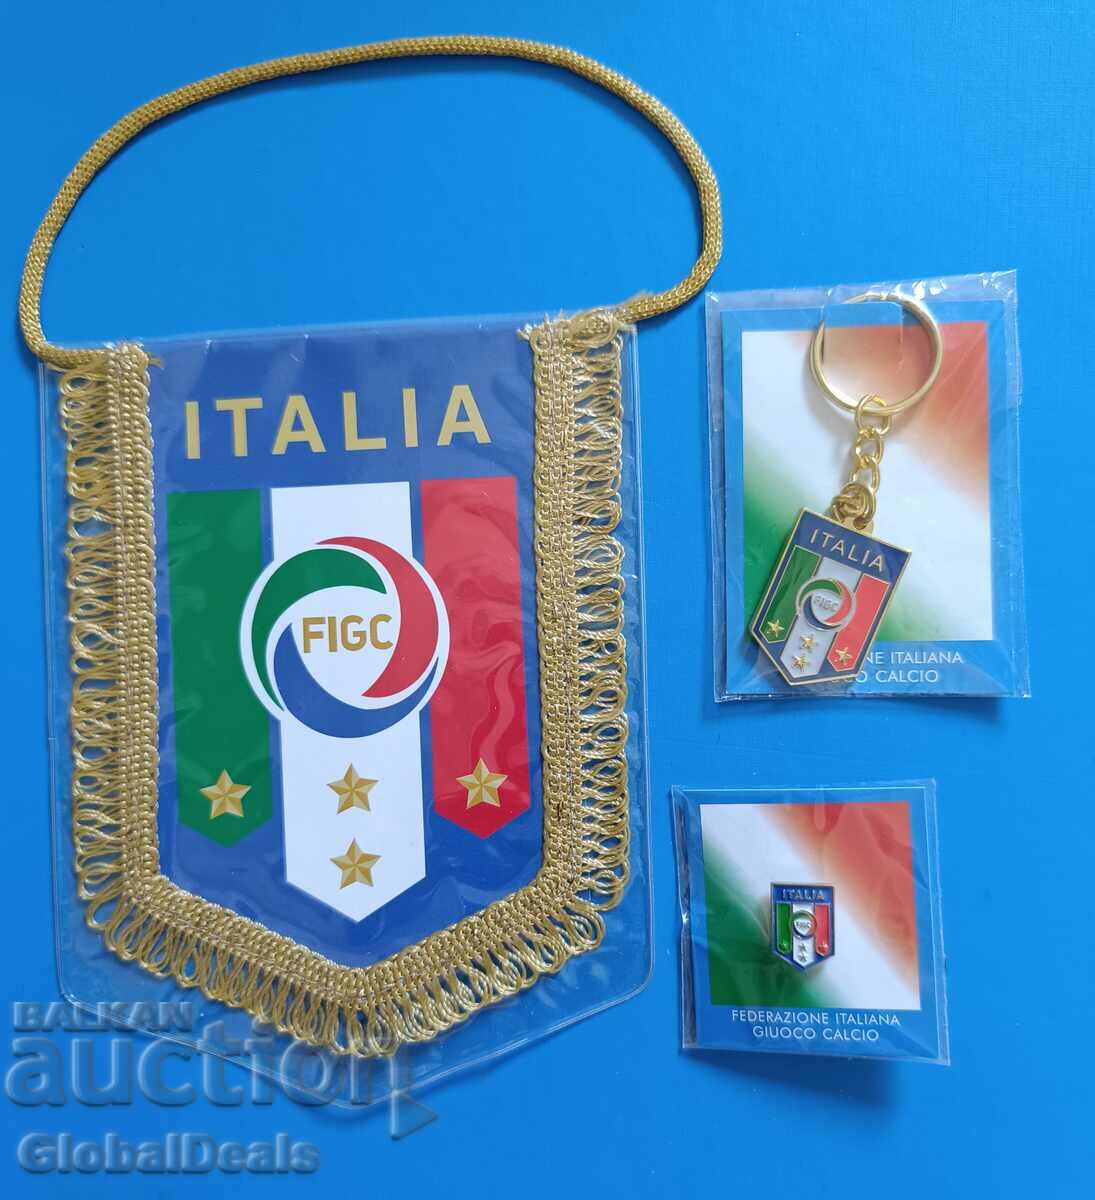 България - Италия, значка, флаг, ключодържател и програма